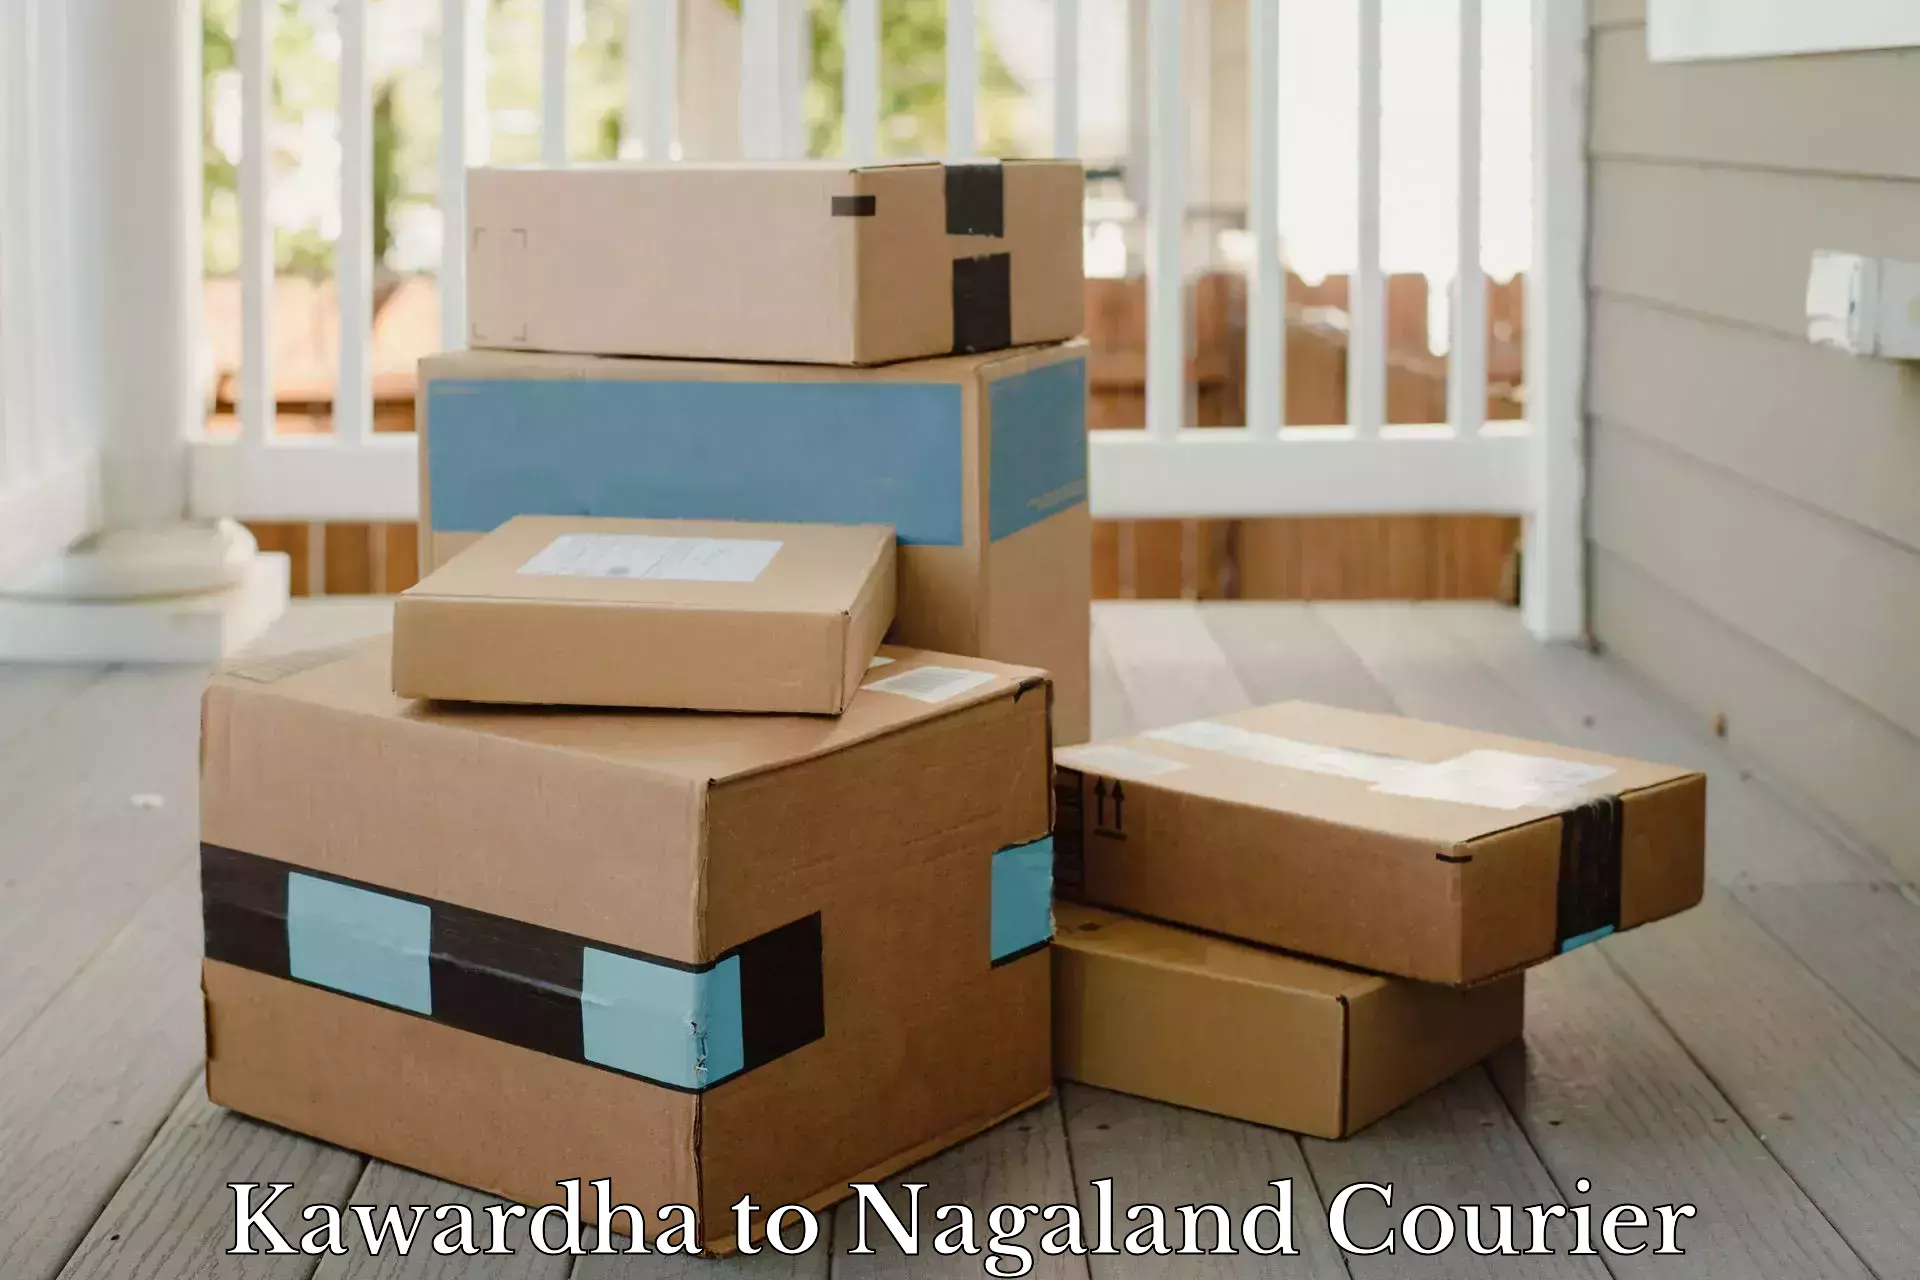 Shipping and handling Kawardha to NIT Nagaland